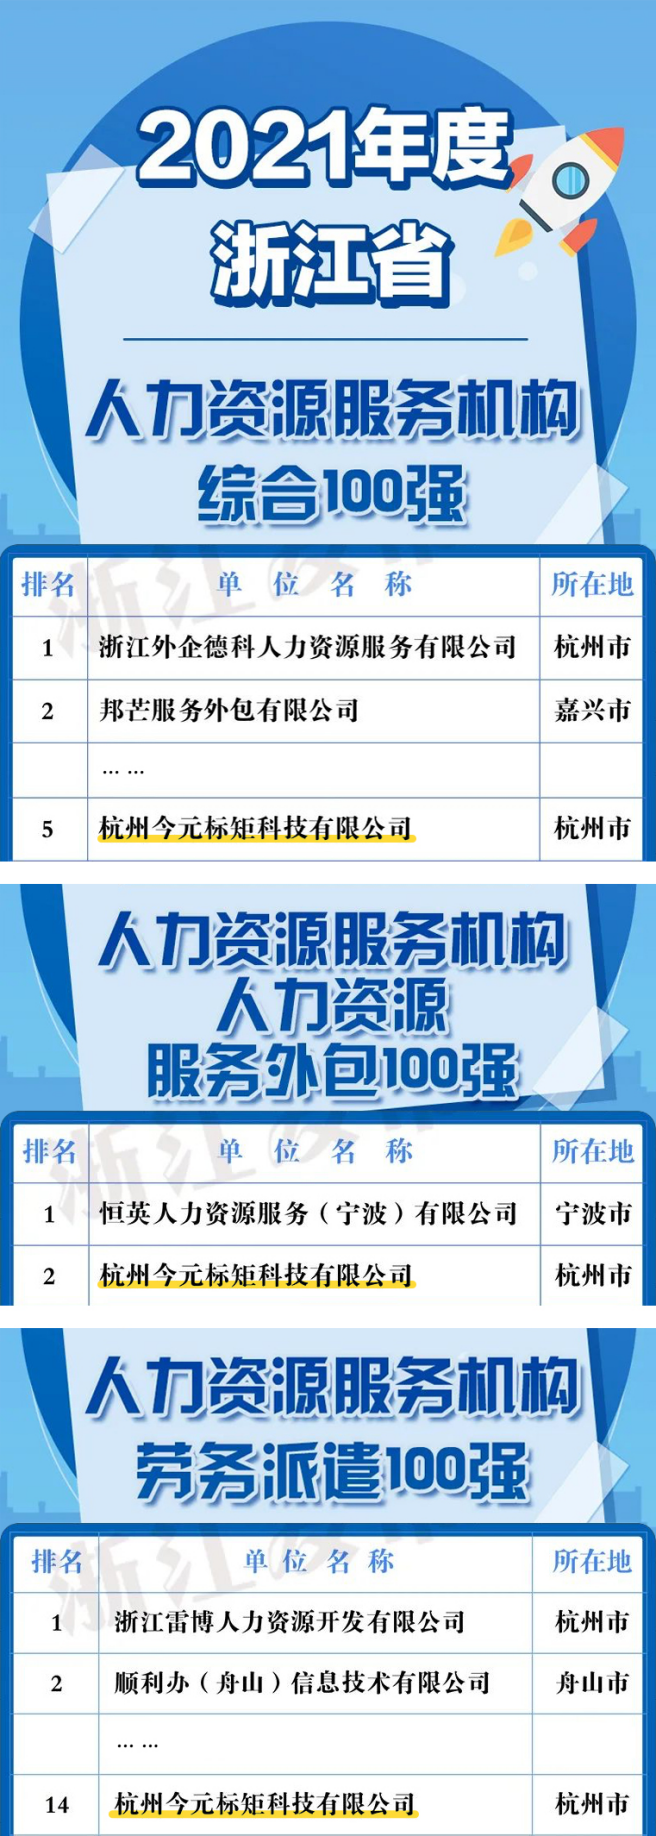 金柚网荣登浙江省人力资源服务机构劳务派遣100强榜单